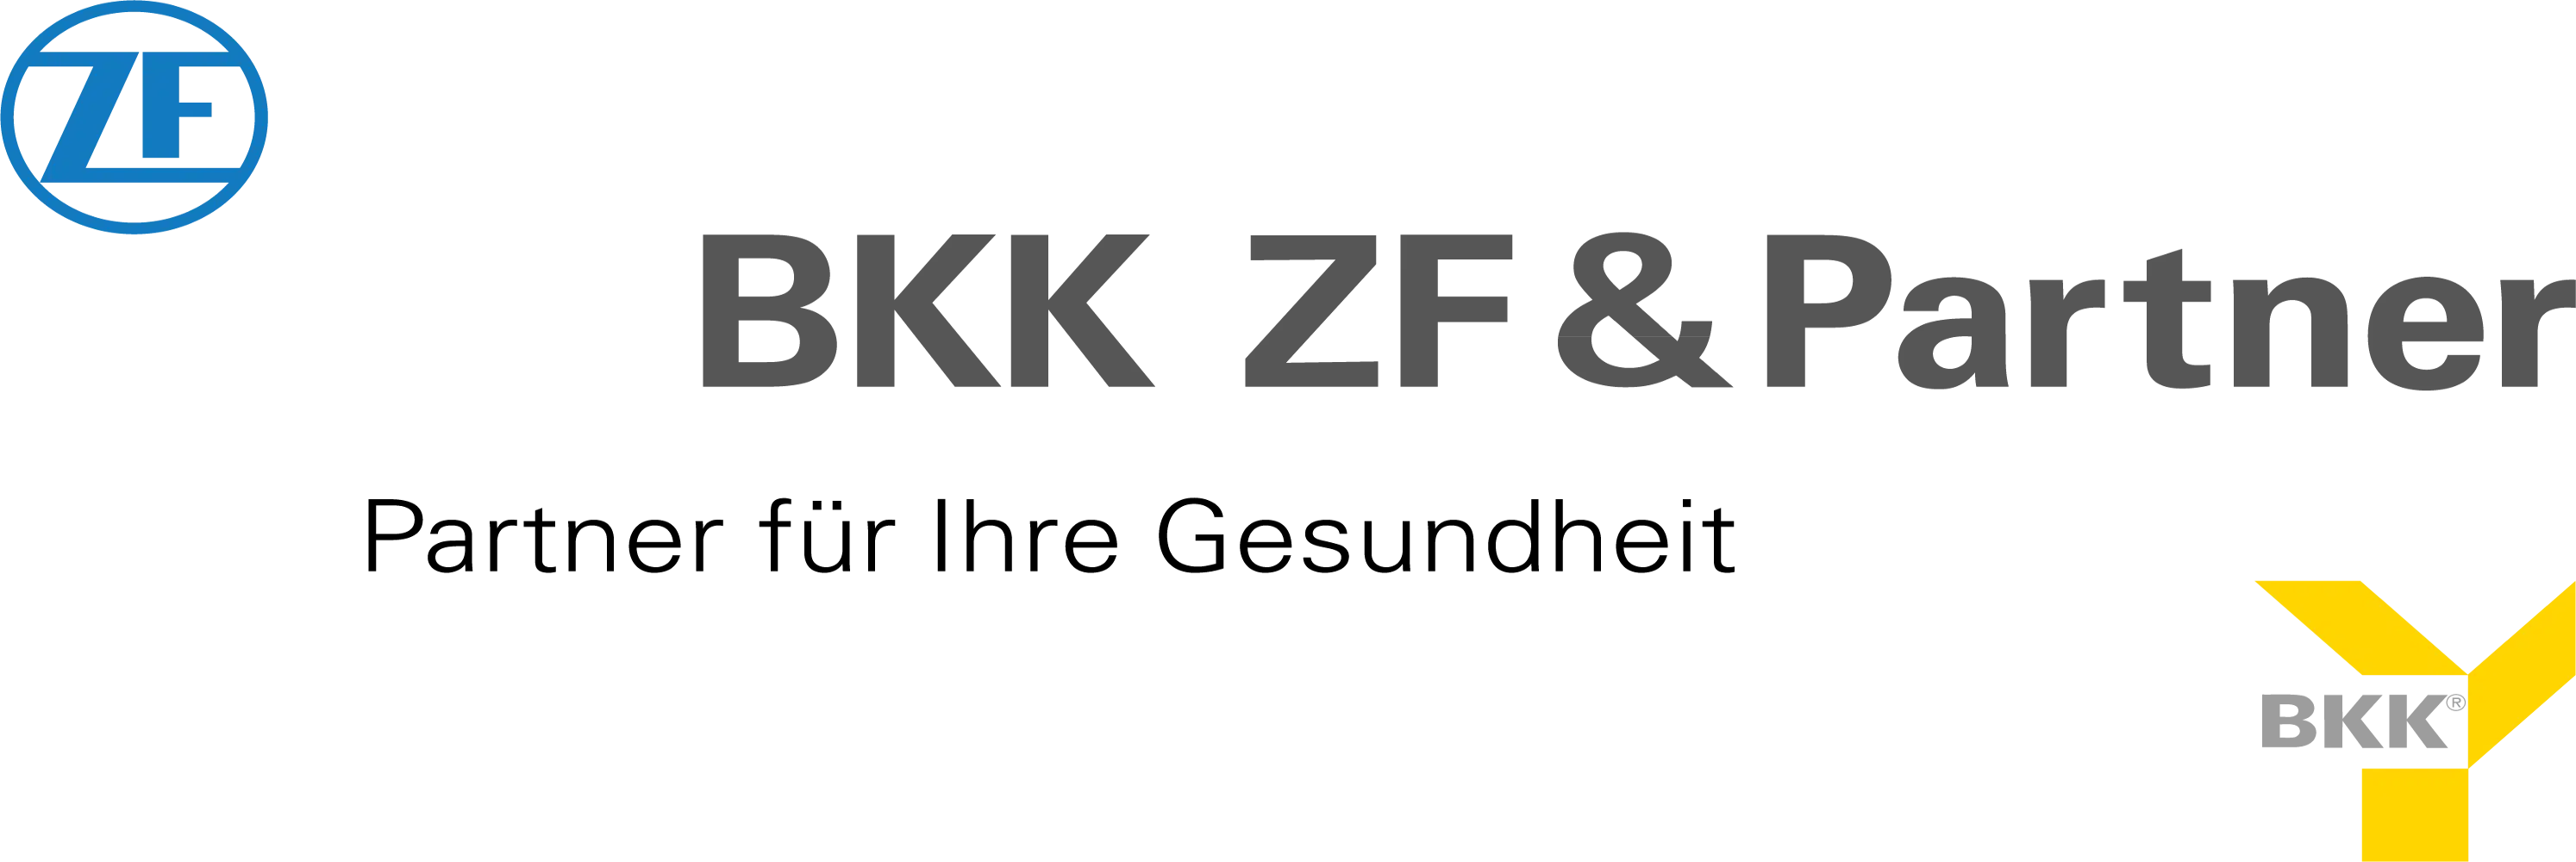 BKK ZF & Partner